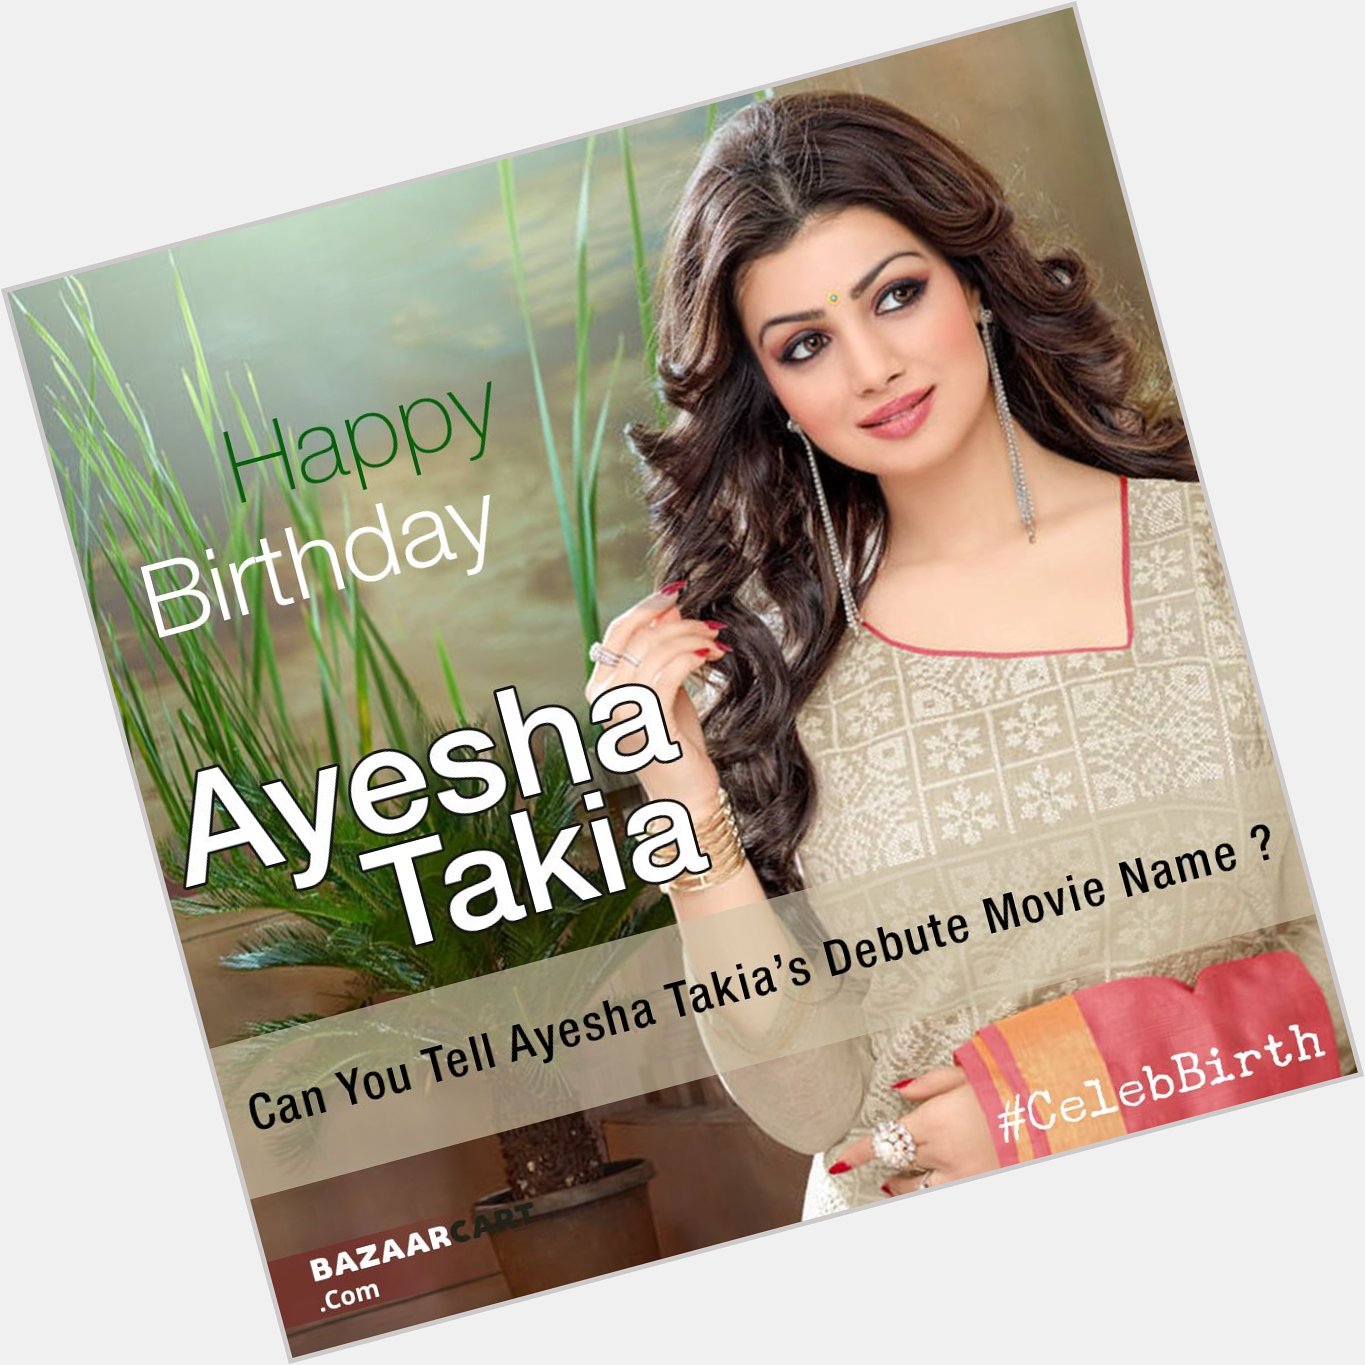 Happy Birthday to Ayesha Takia  